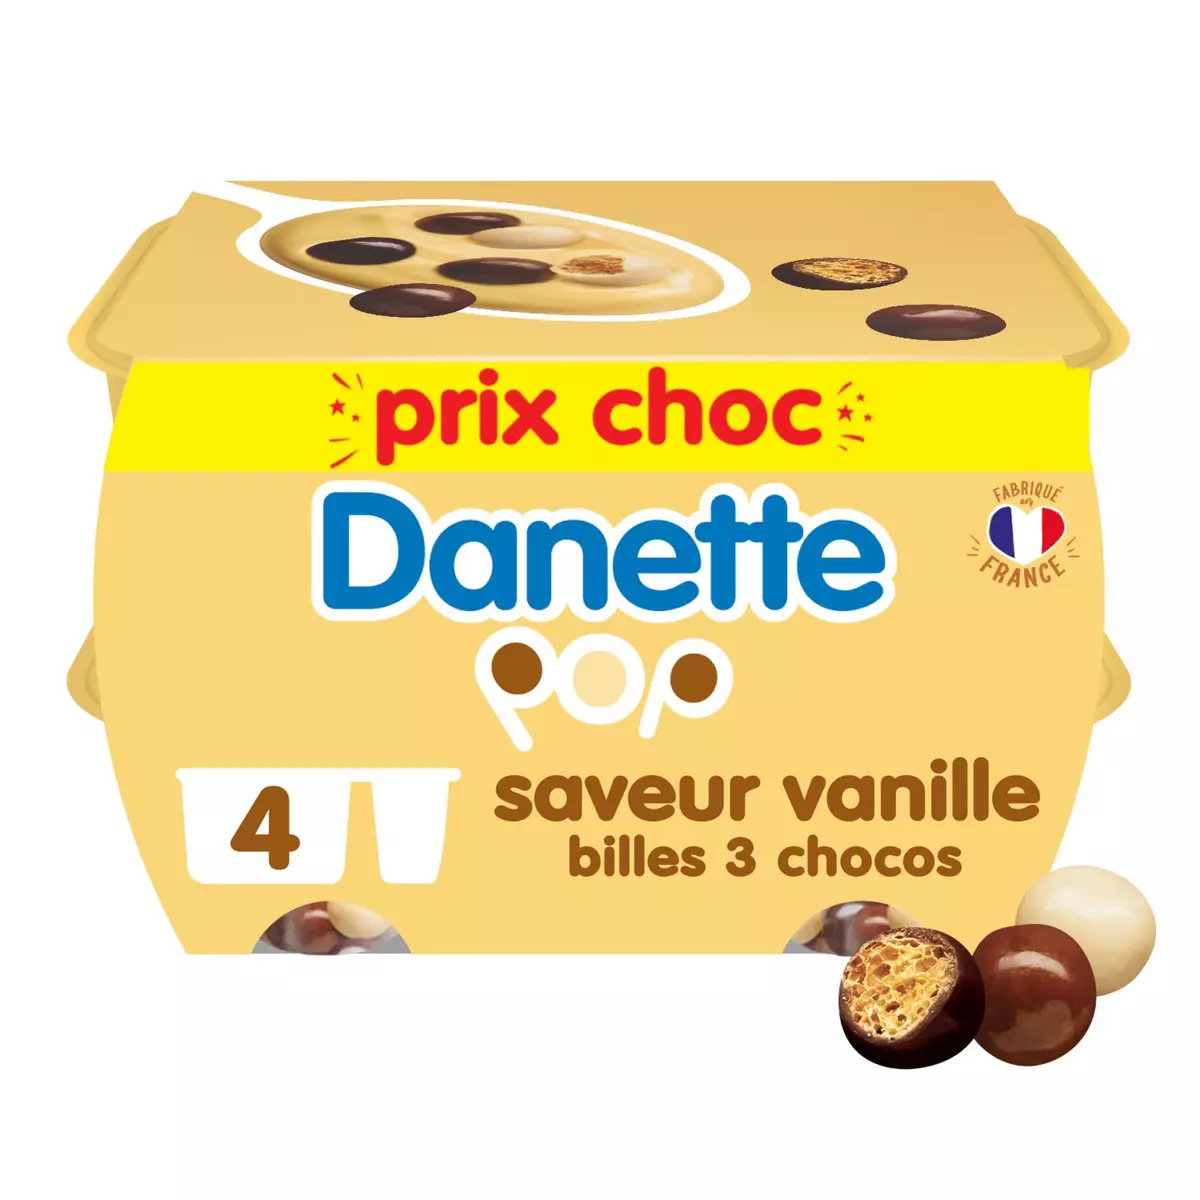 DANETTE Pop Crème dessert à la vanille et billes soufflées 3 chocos 4x117g